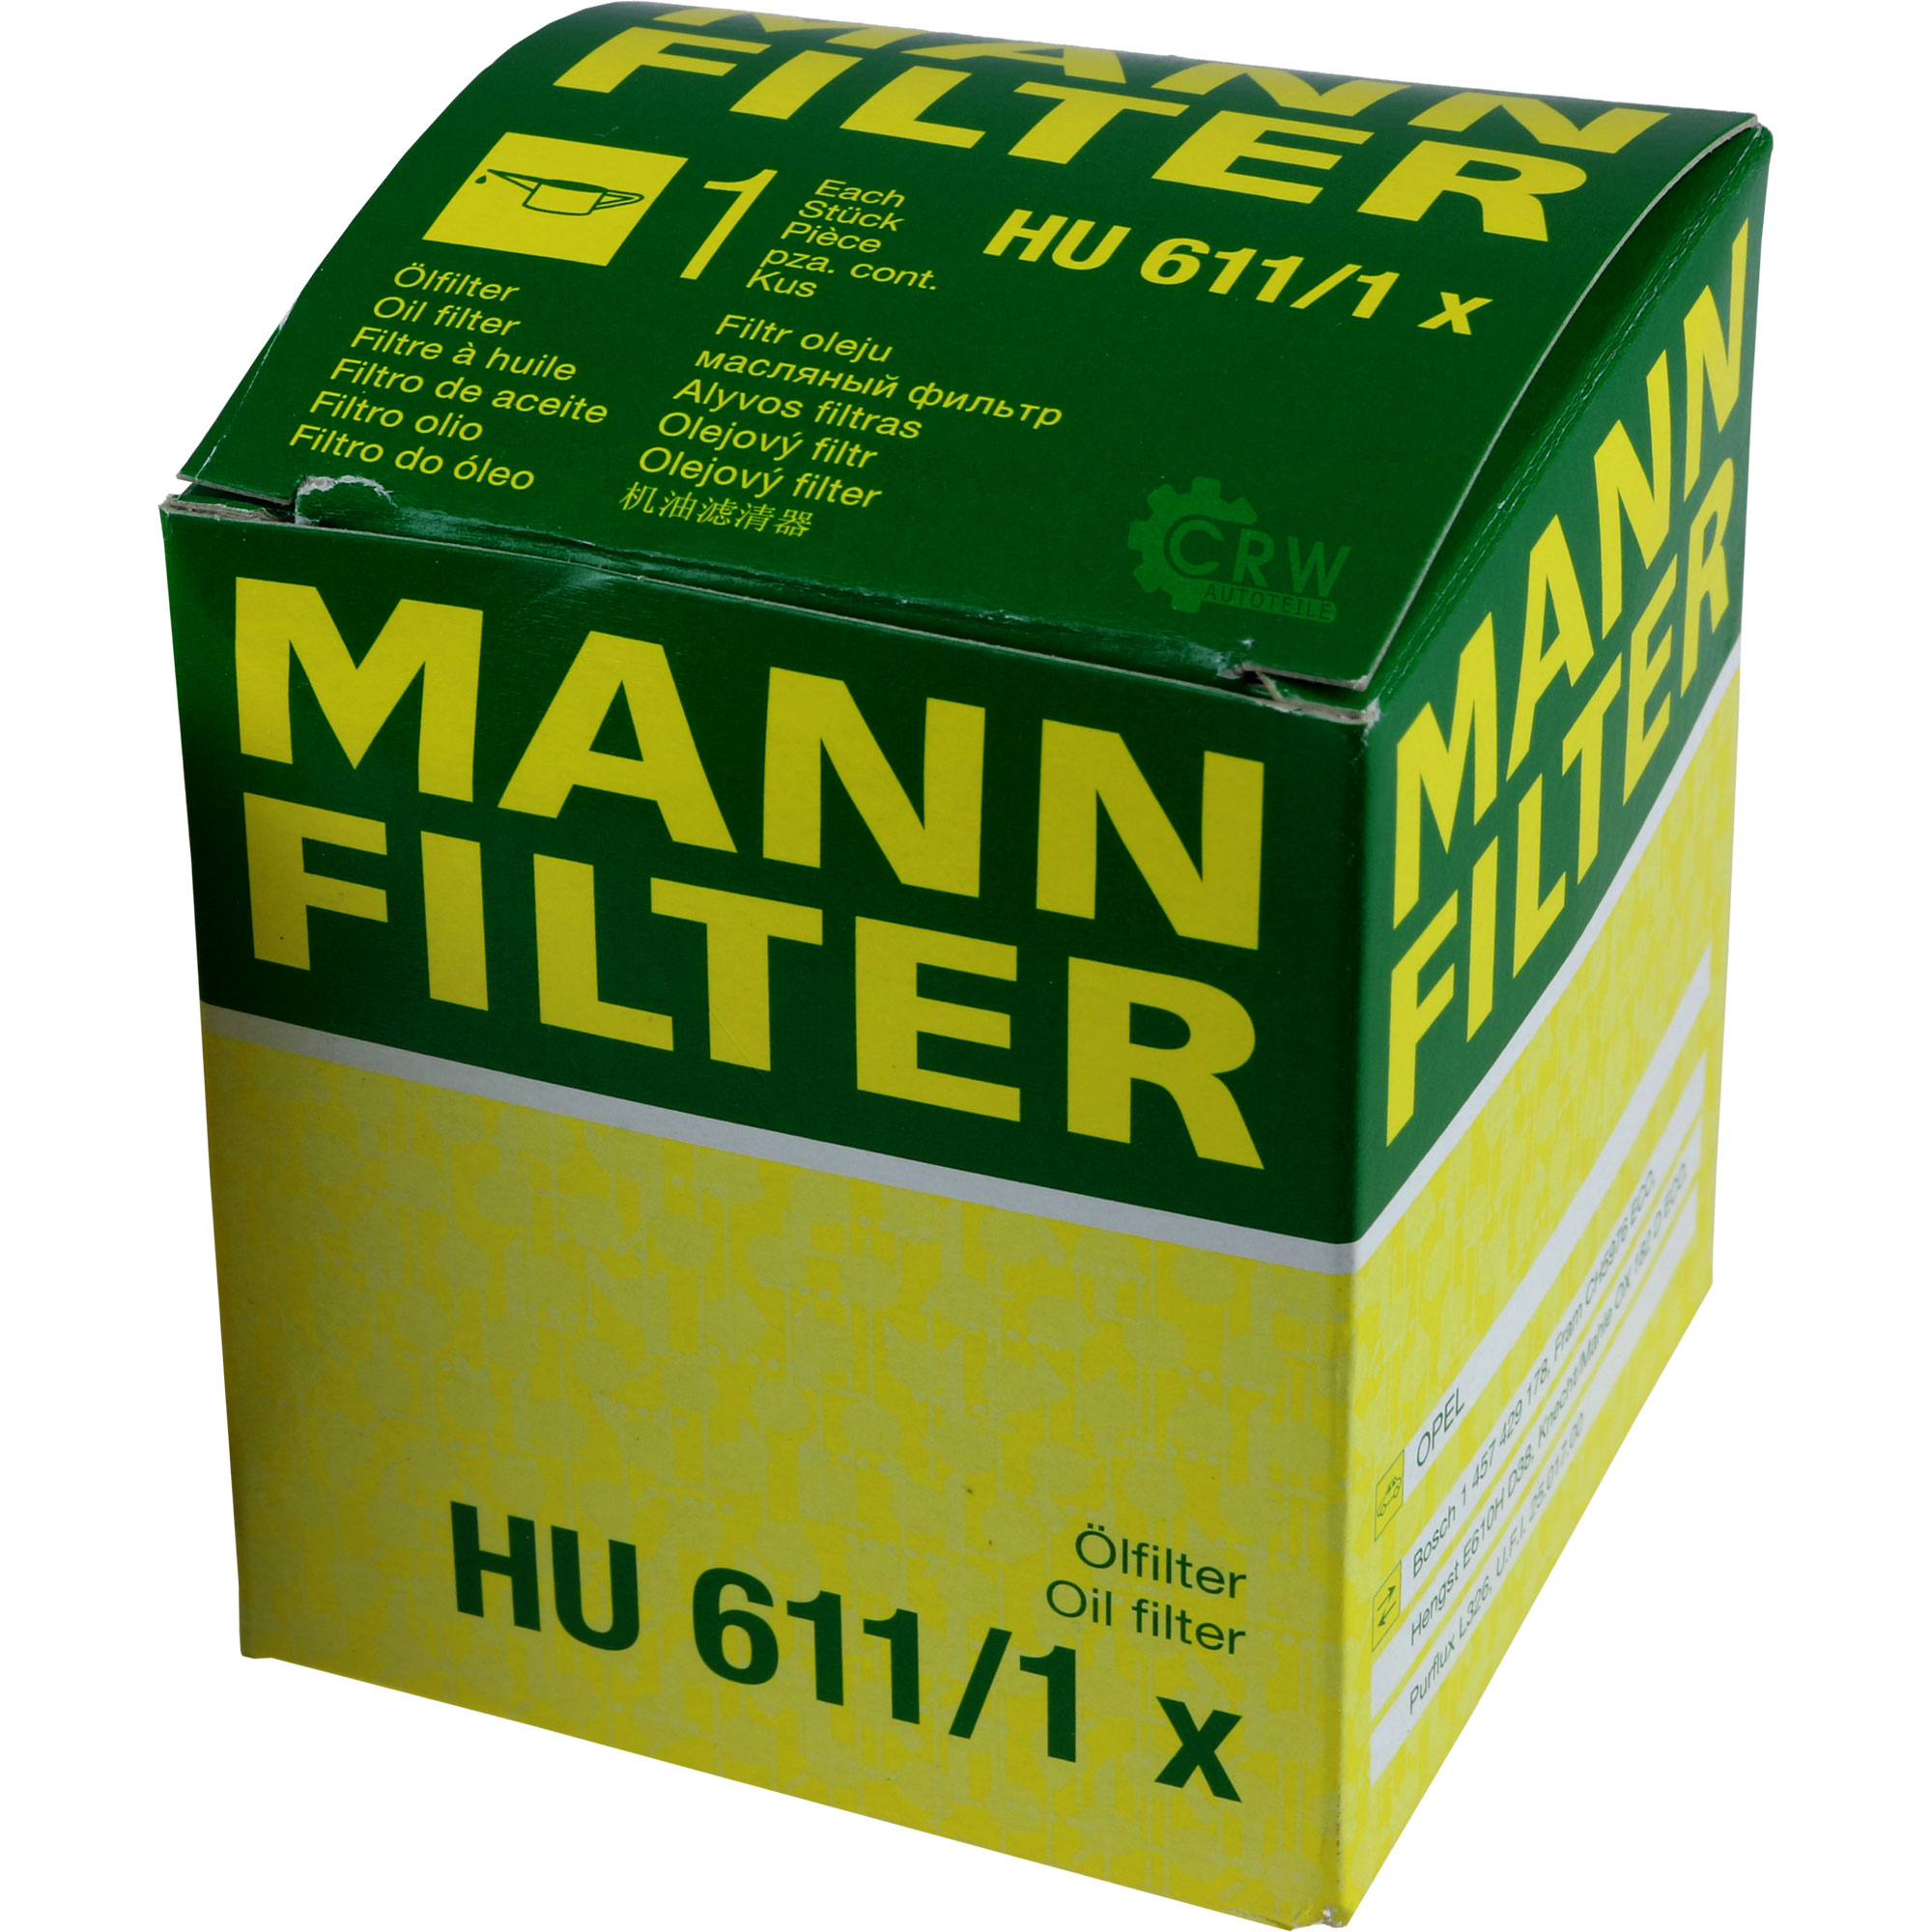 MANN-FILTER Ölfilter HU 611/1 x Oil Filter